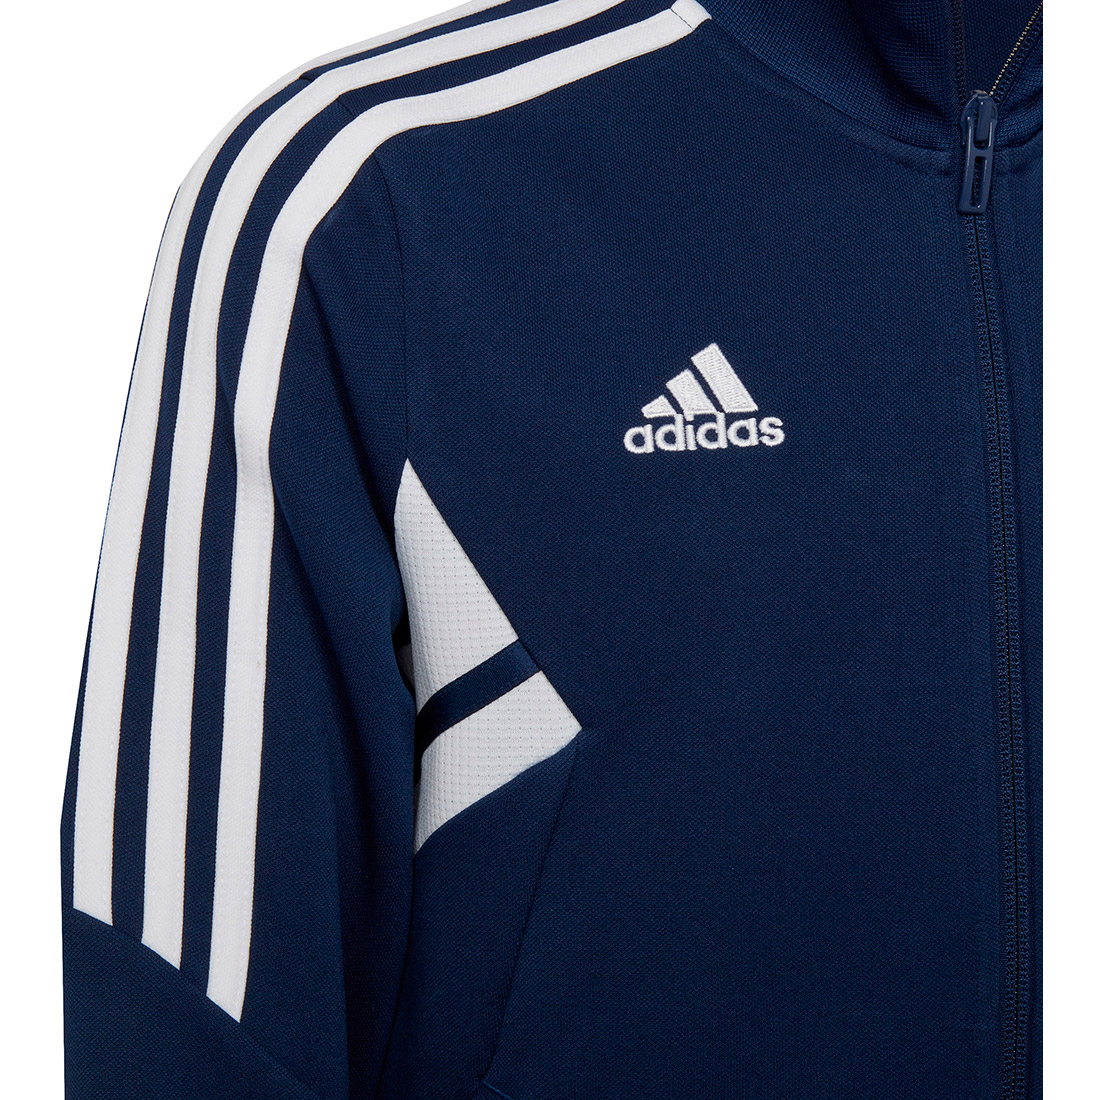 Adidas Kinder Trainingsjacke Condivo 22 blau-weiß